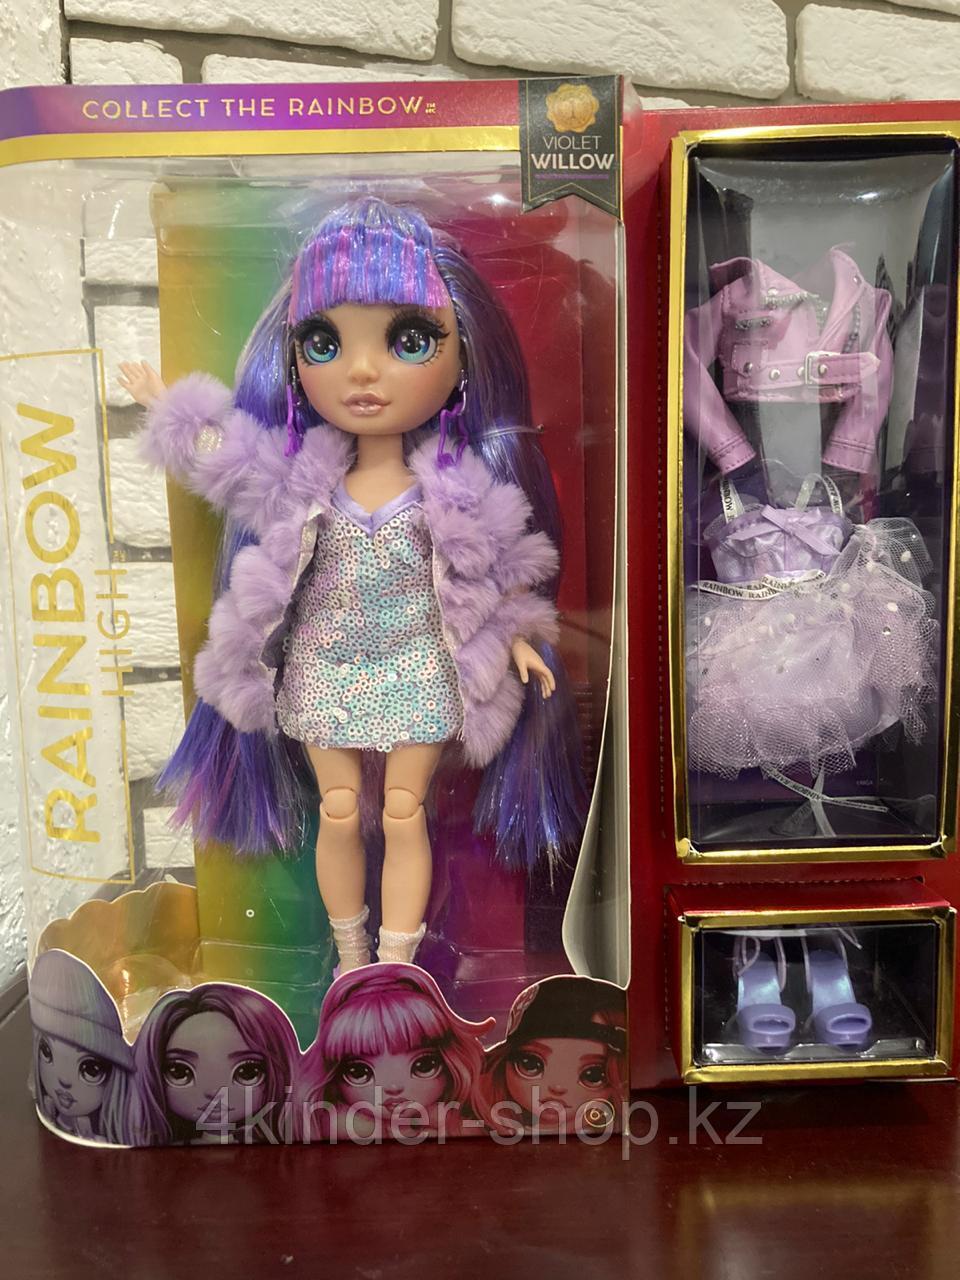 Рейнбоу Хай - Кукла Rainbow High Виолетта (id 82813007)